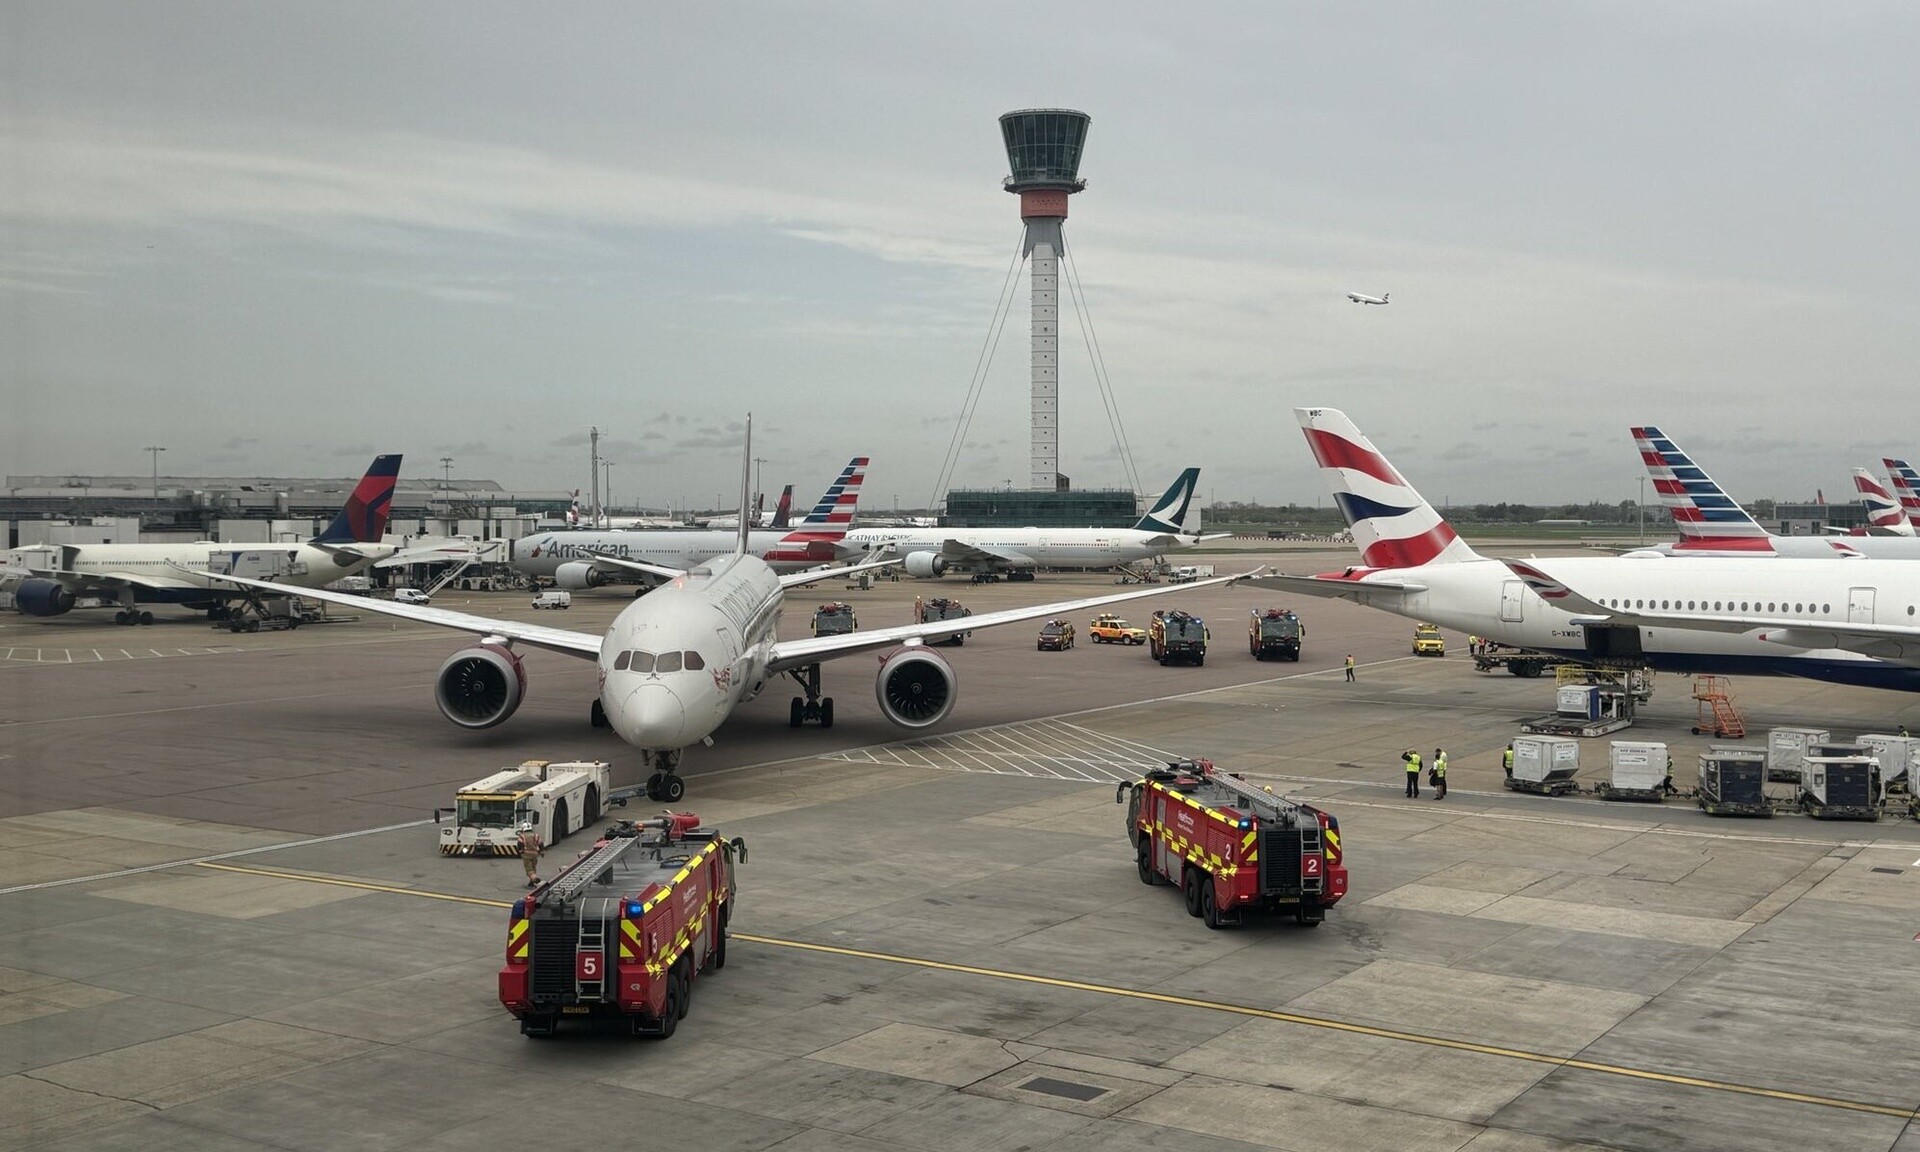 Λονδίνο: Χάος στο αεροδρόμιο του Χίθροου - Συγκρούστηκαν δύο αεροπλάνα